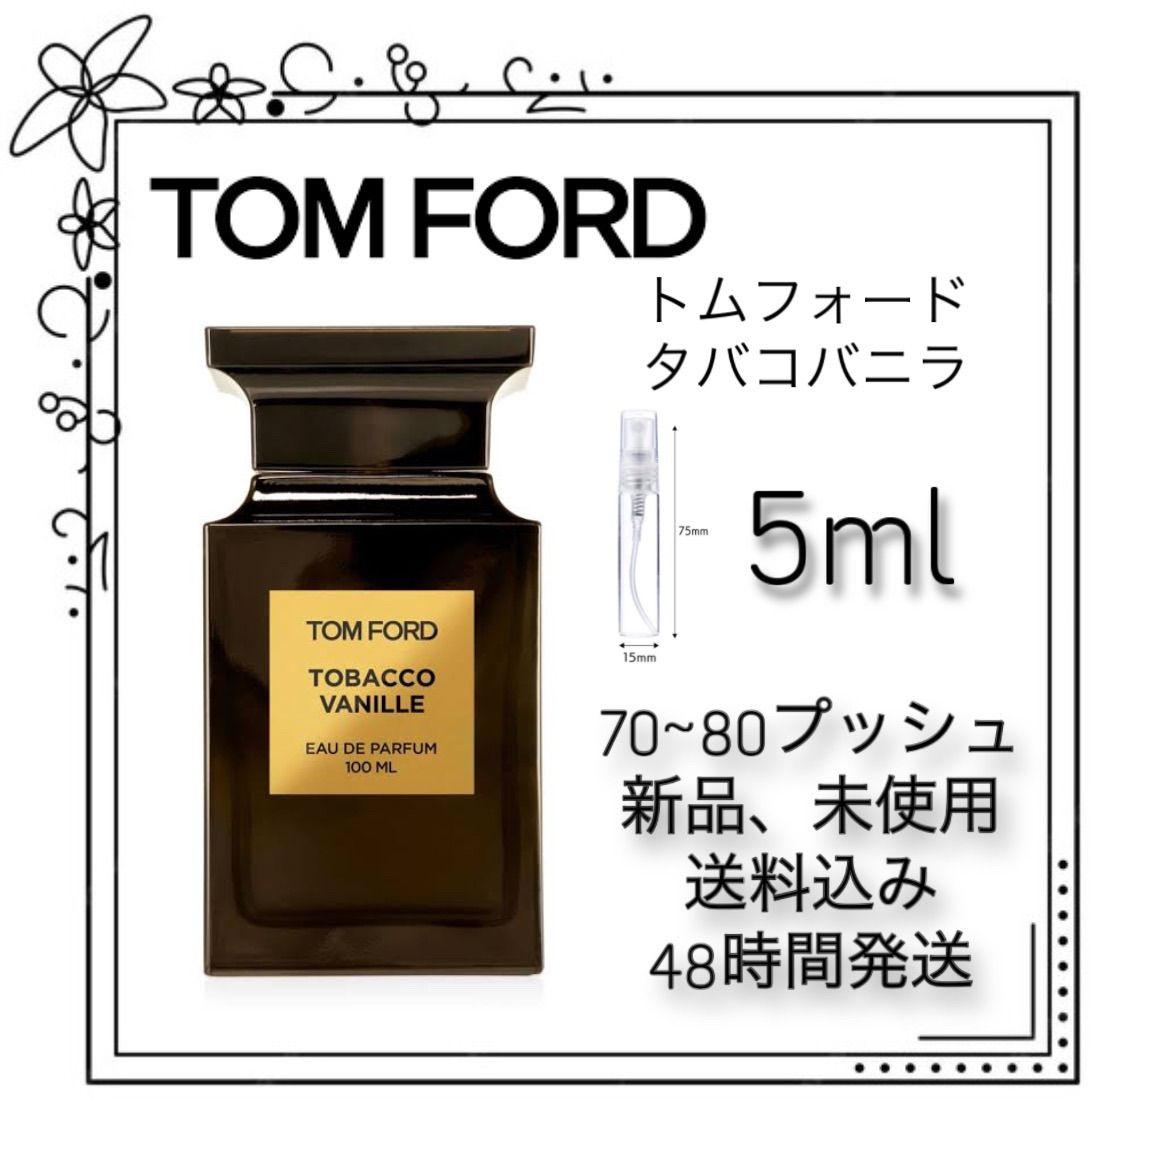 【低価新作登場】TOM FORD トムフォード タバコバニラ オードパルファム 100ml ユニセックス